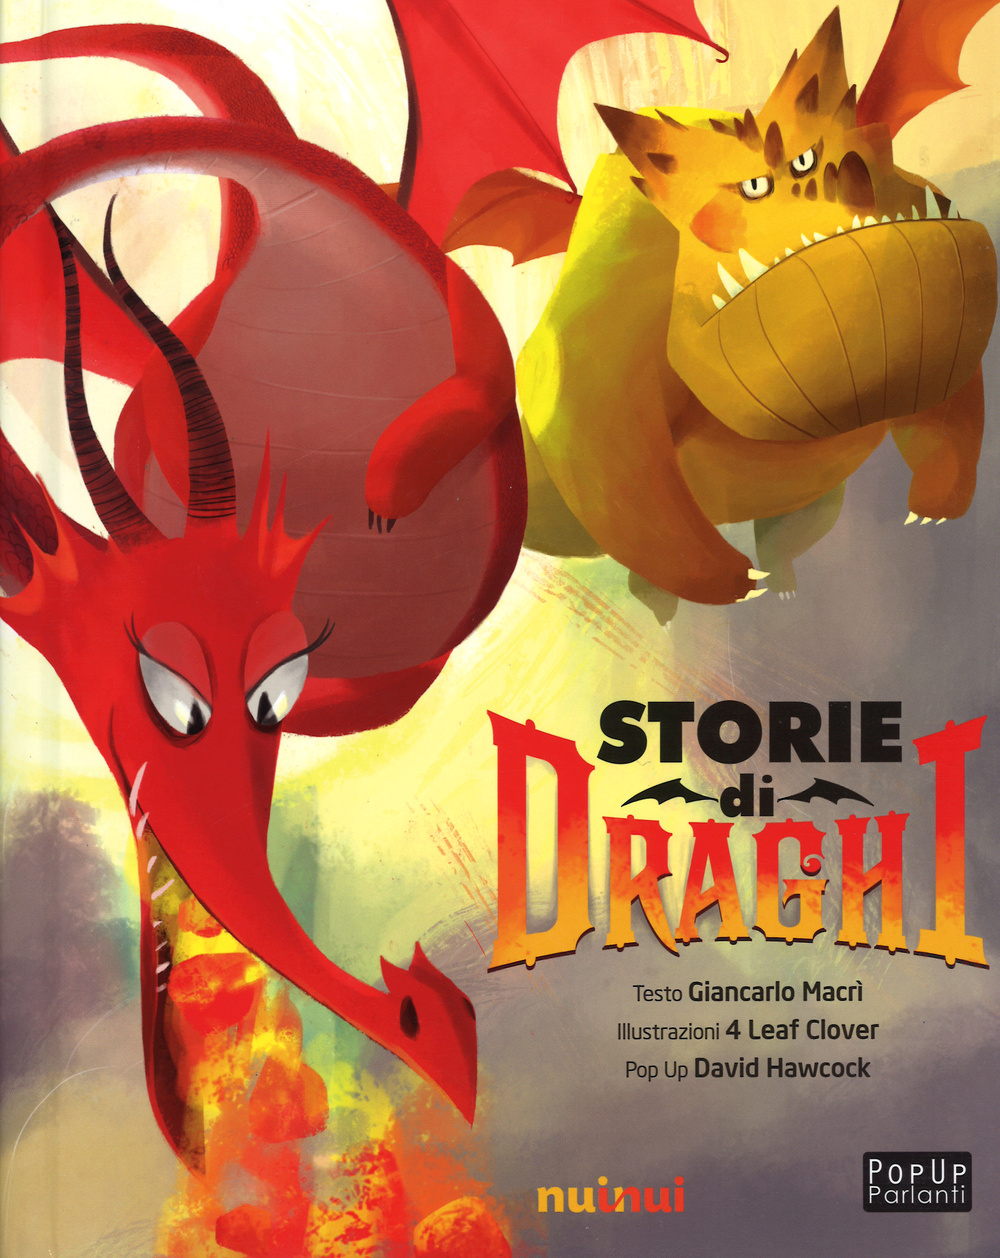 Storie di draghi. Libro sonoro e pop-up